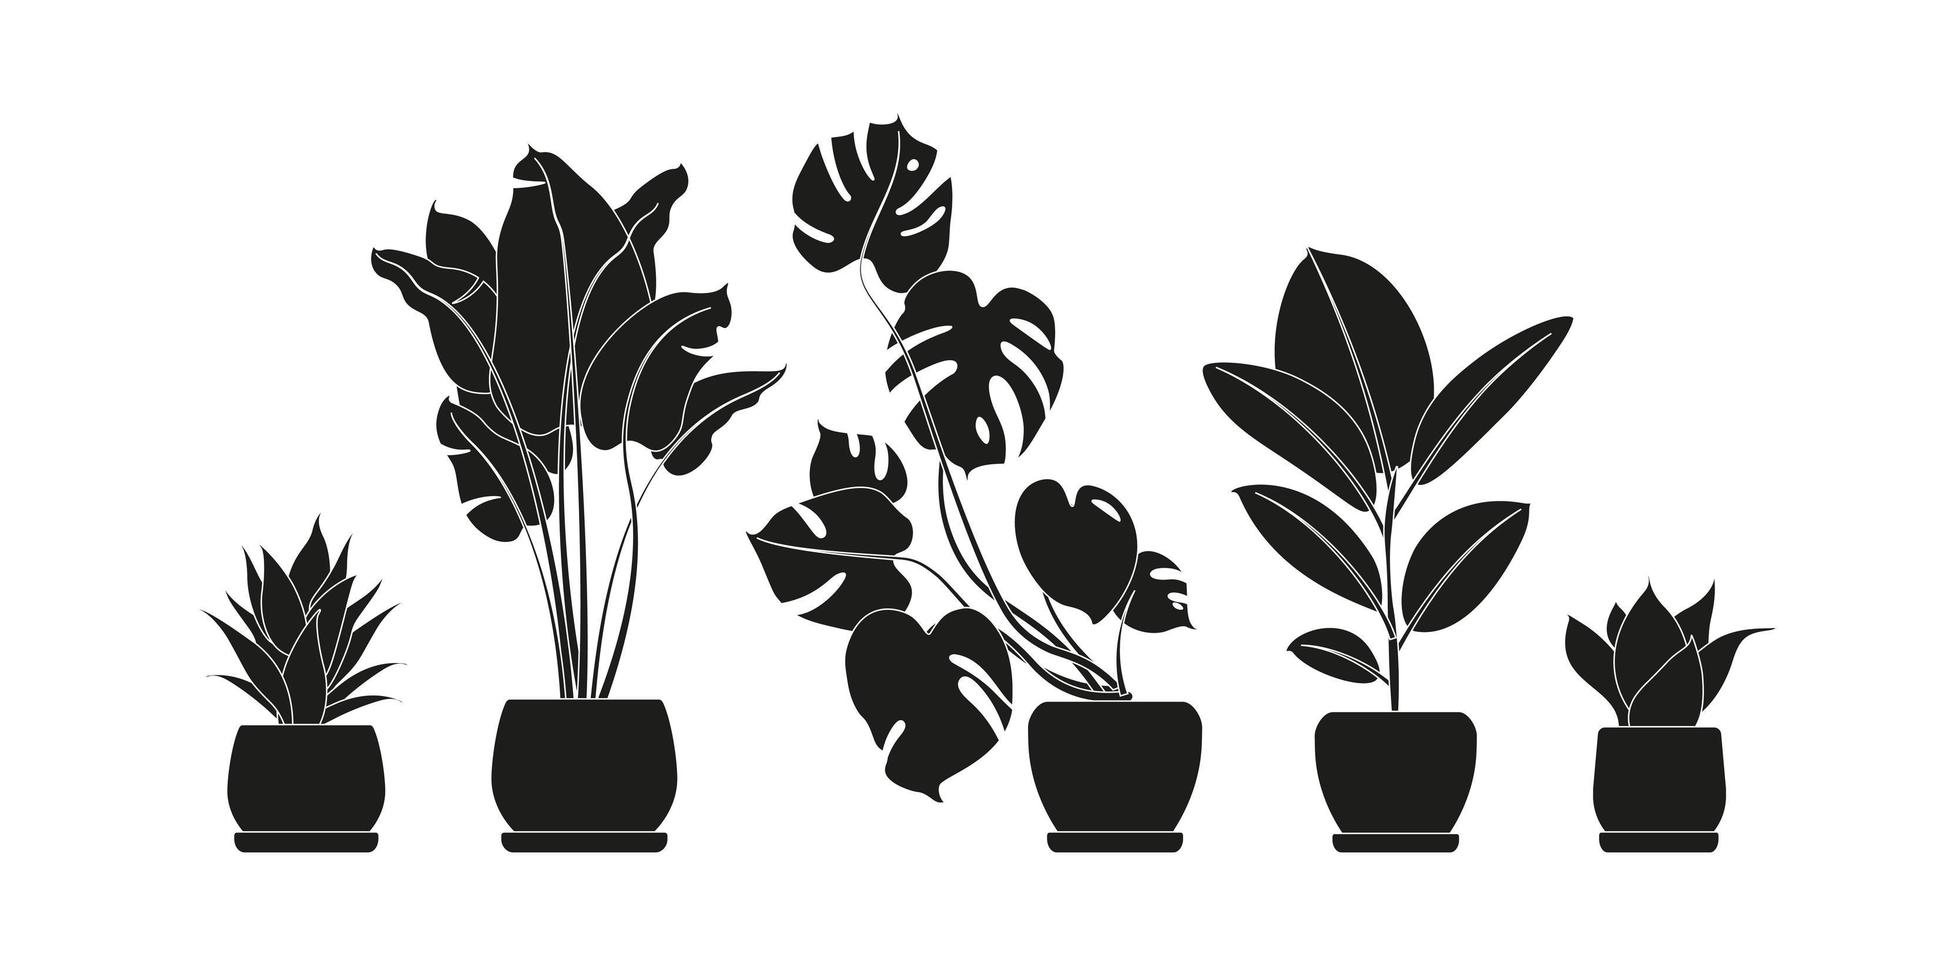 collectie silhouetten van kamerplanten in zwarte kleur. potplanten geïsoleerd op wit. set groene tropische planten. trendy woondecoratie met kamerplanten, plantenbakken, cactus, tropische bladeren. vector